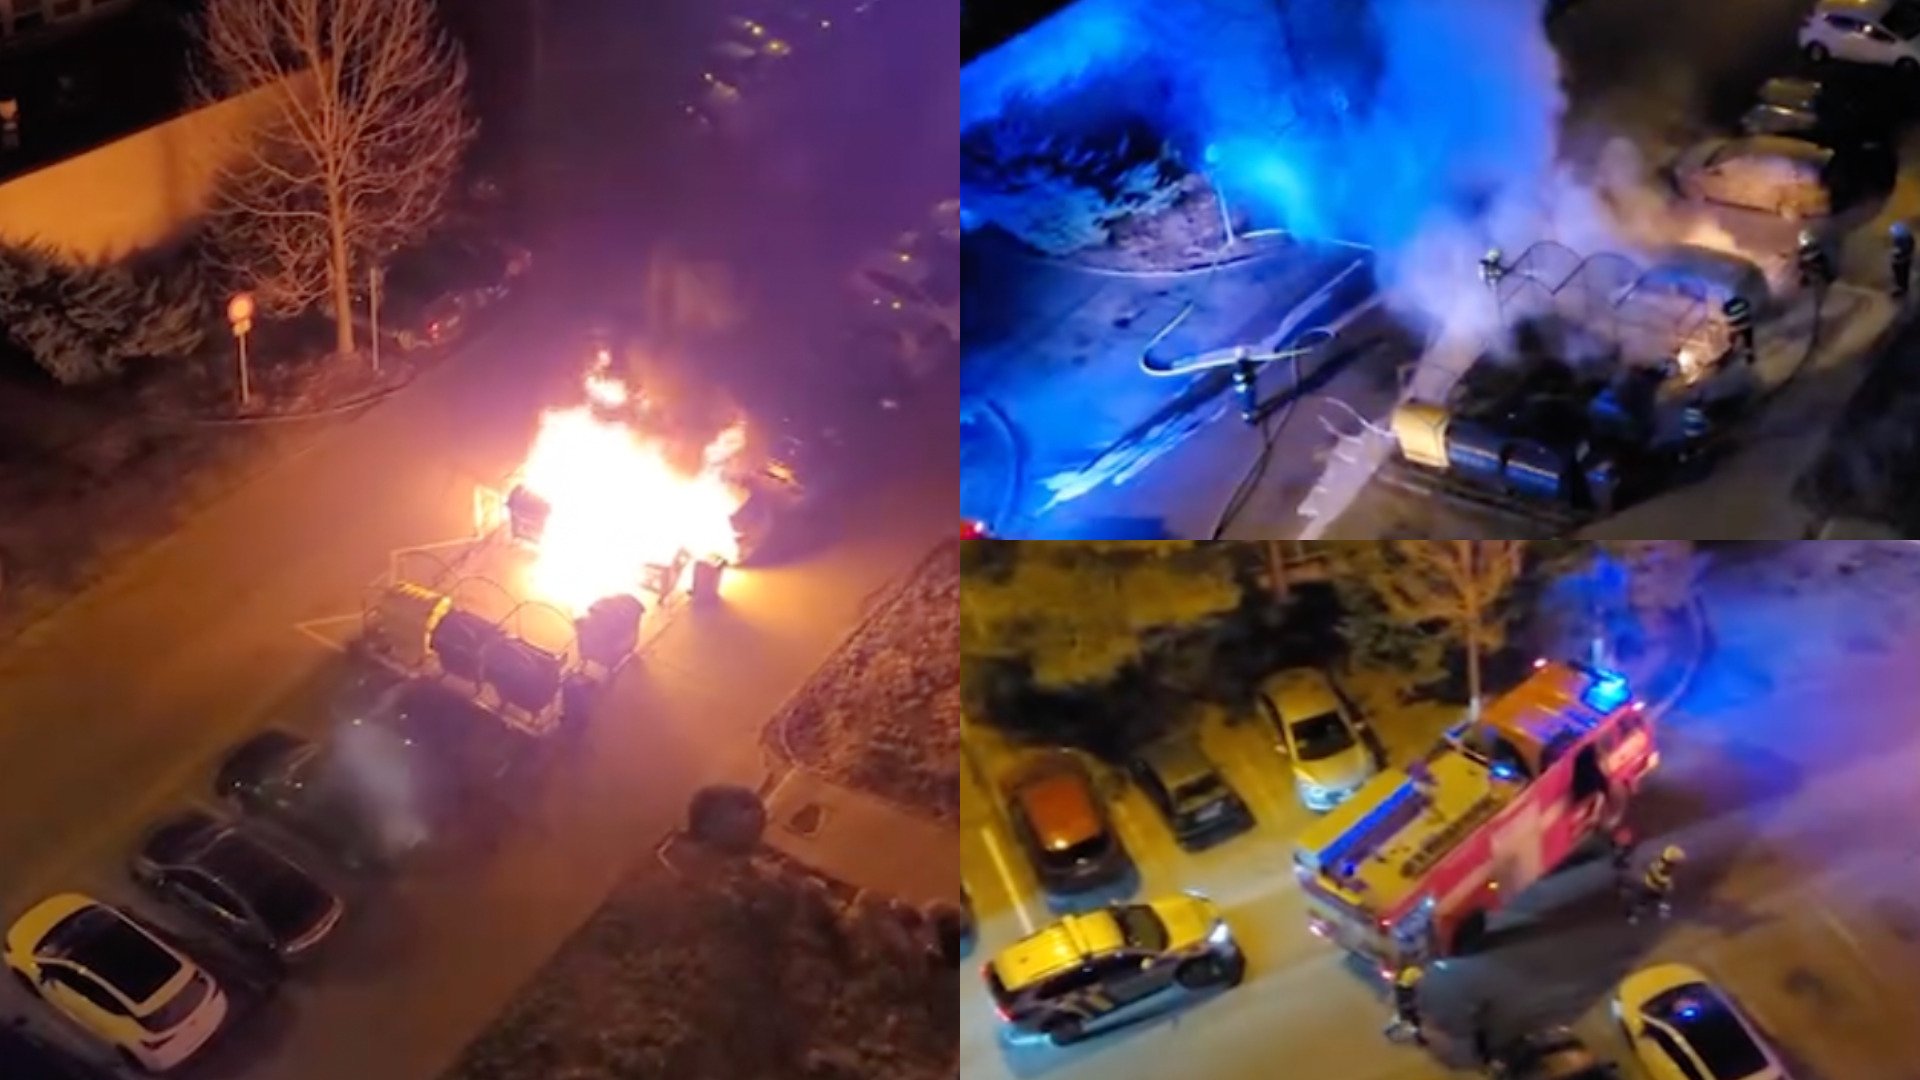 Požiar na Sídlisku KVP spôsobil škodu vo výške 26-tisíc eur. Horeli kontajnery aj autá (VIDEO)